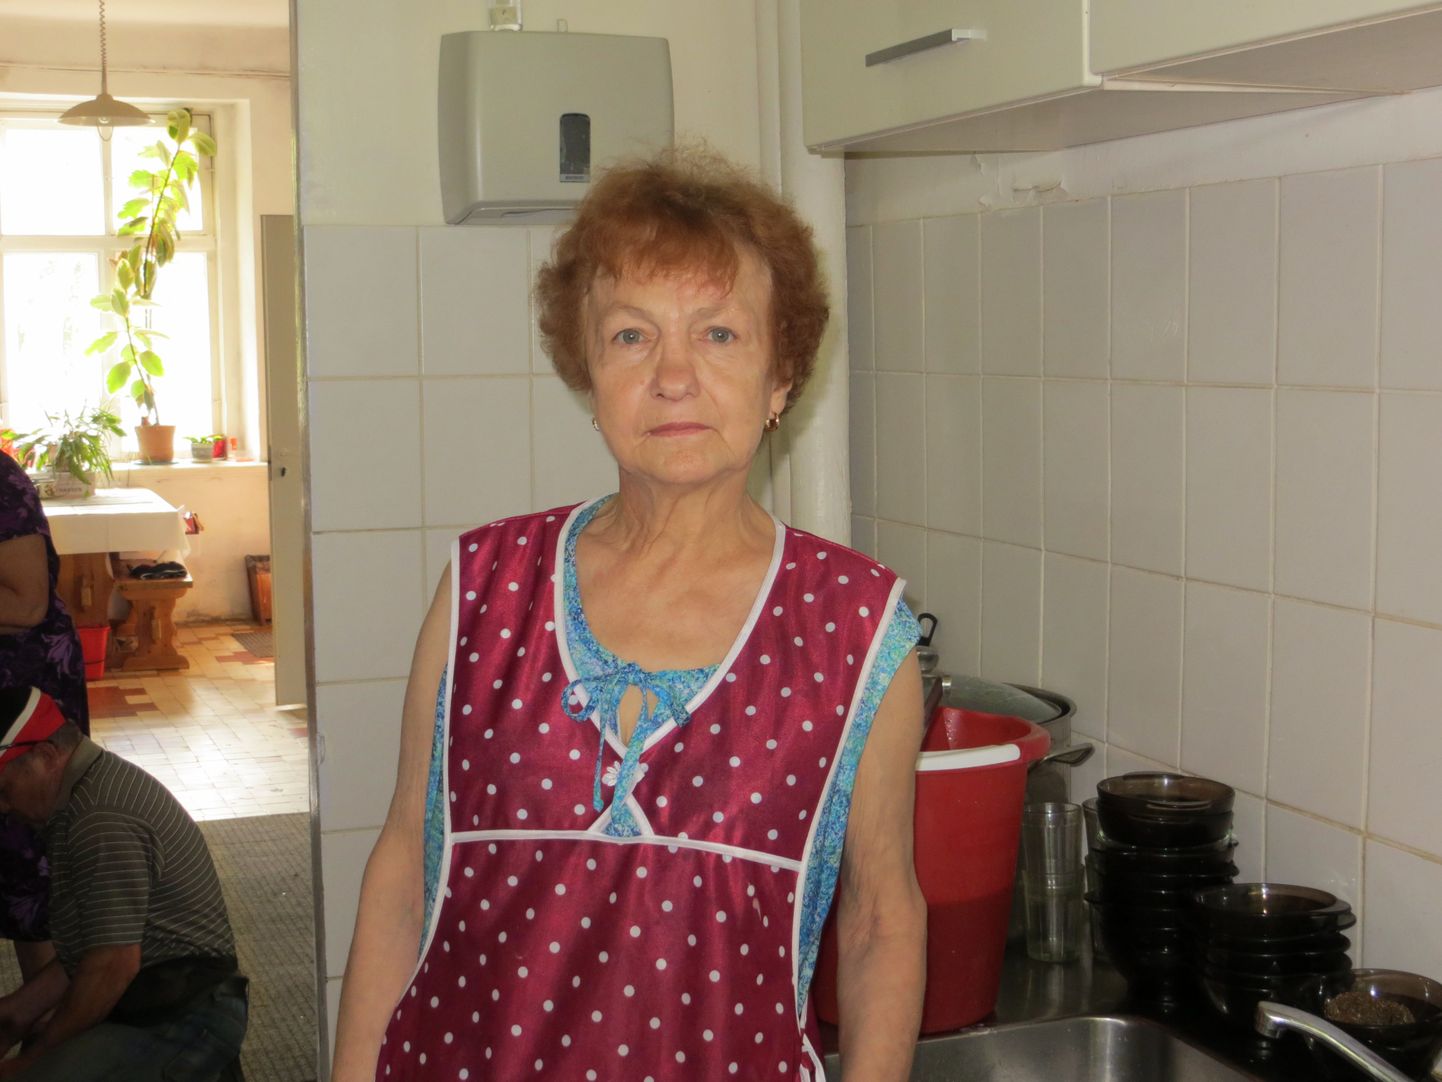 Üle aasta supiköögis kokaametit pidanud Liina Tuvike valmistab koduseid ja maitsvad toite, mis kundedelt ainult kiidusõnu on pälvinud. 27aastase tööstaažiga kokk teenib supiköögis väikest pensionilisa.